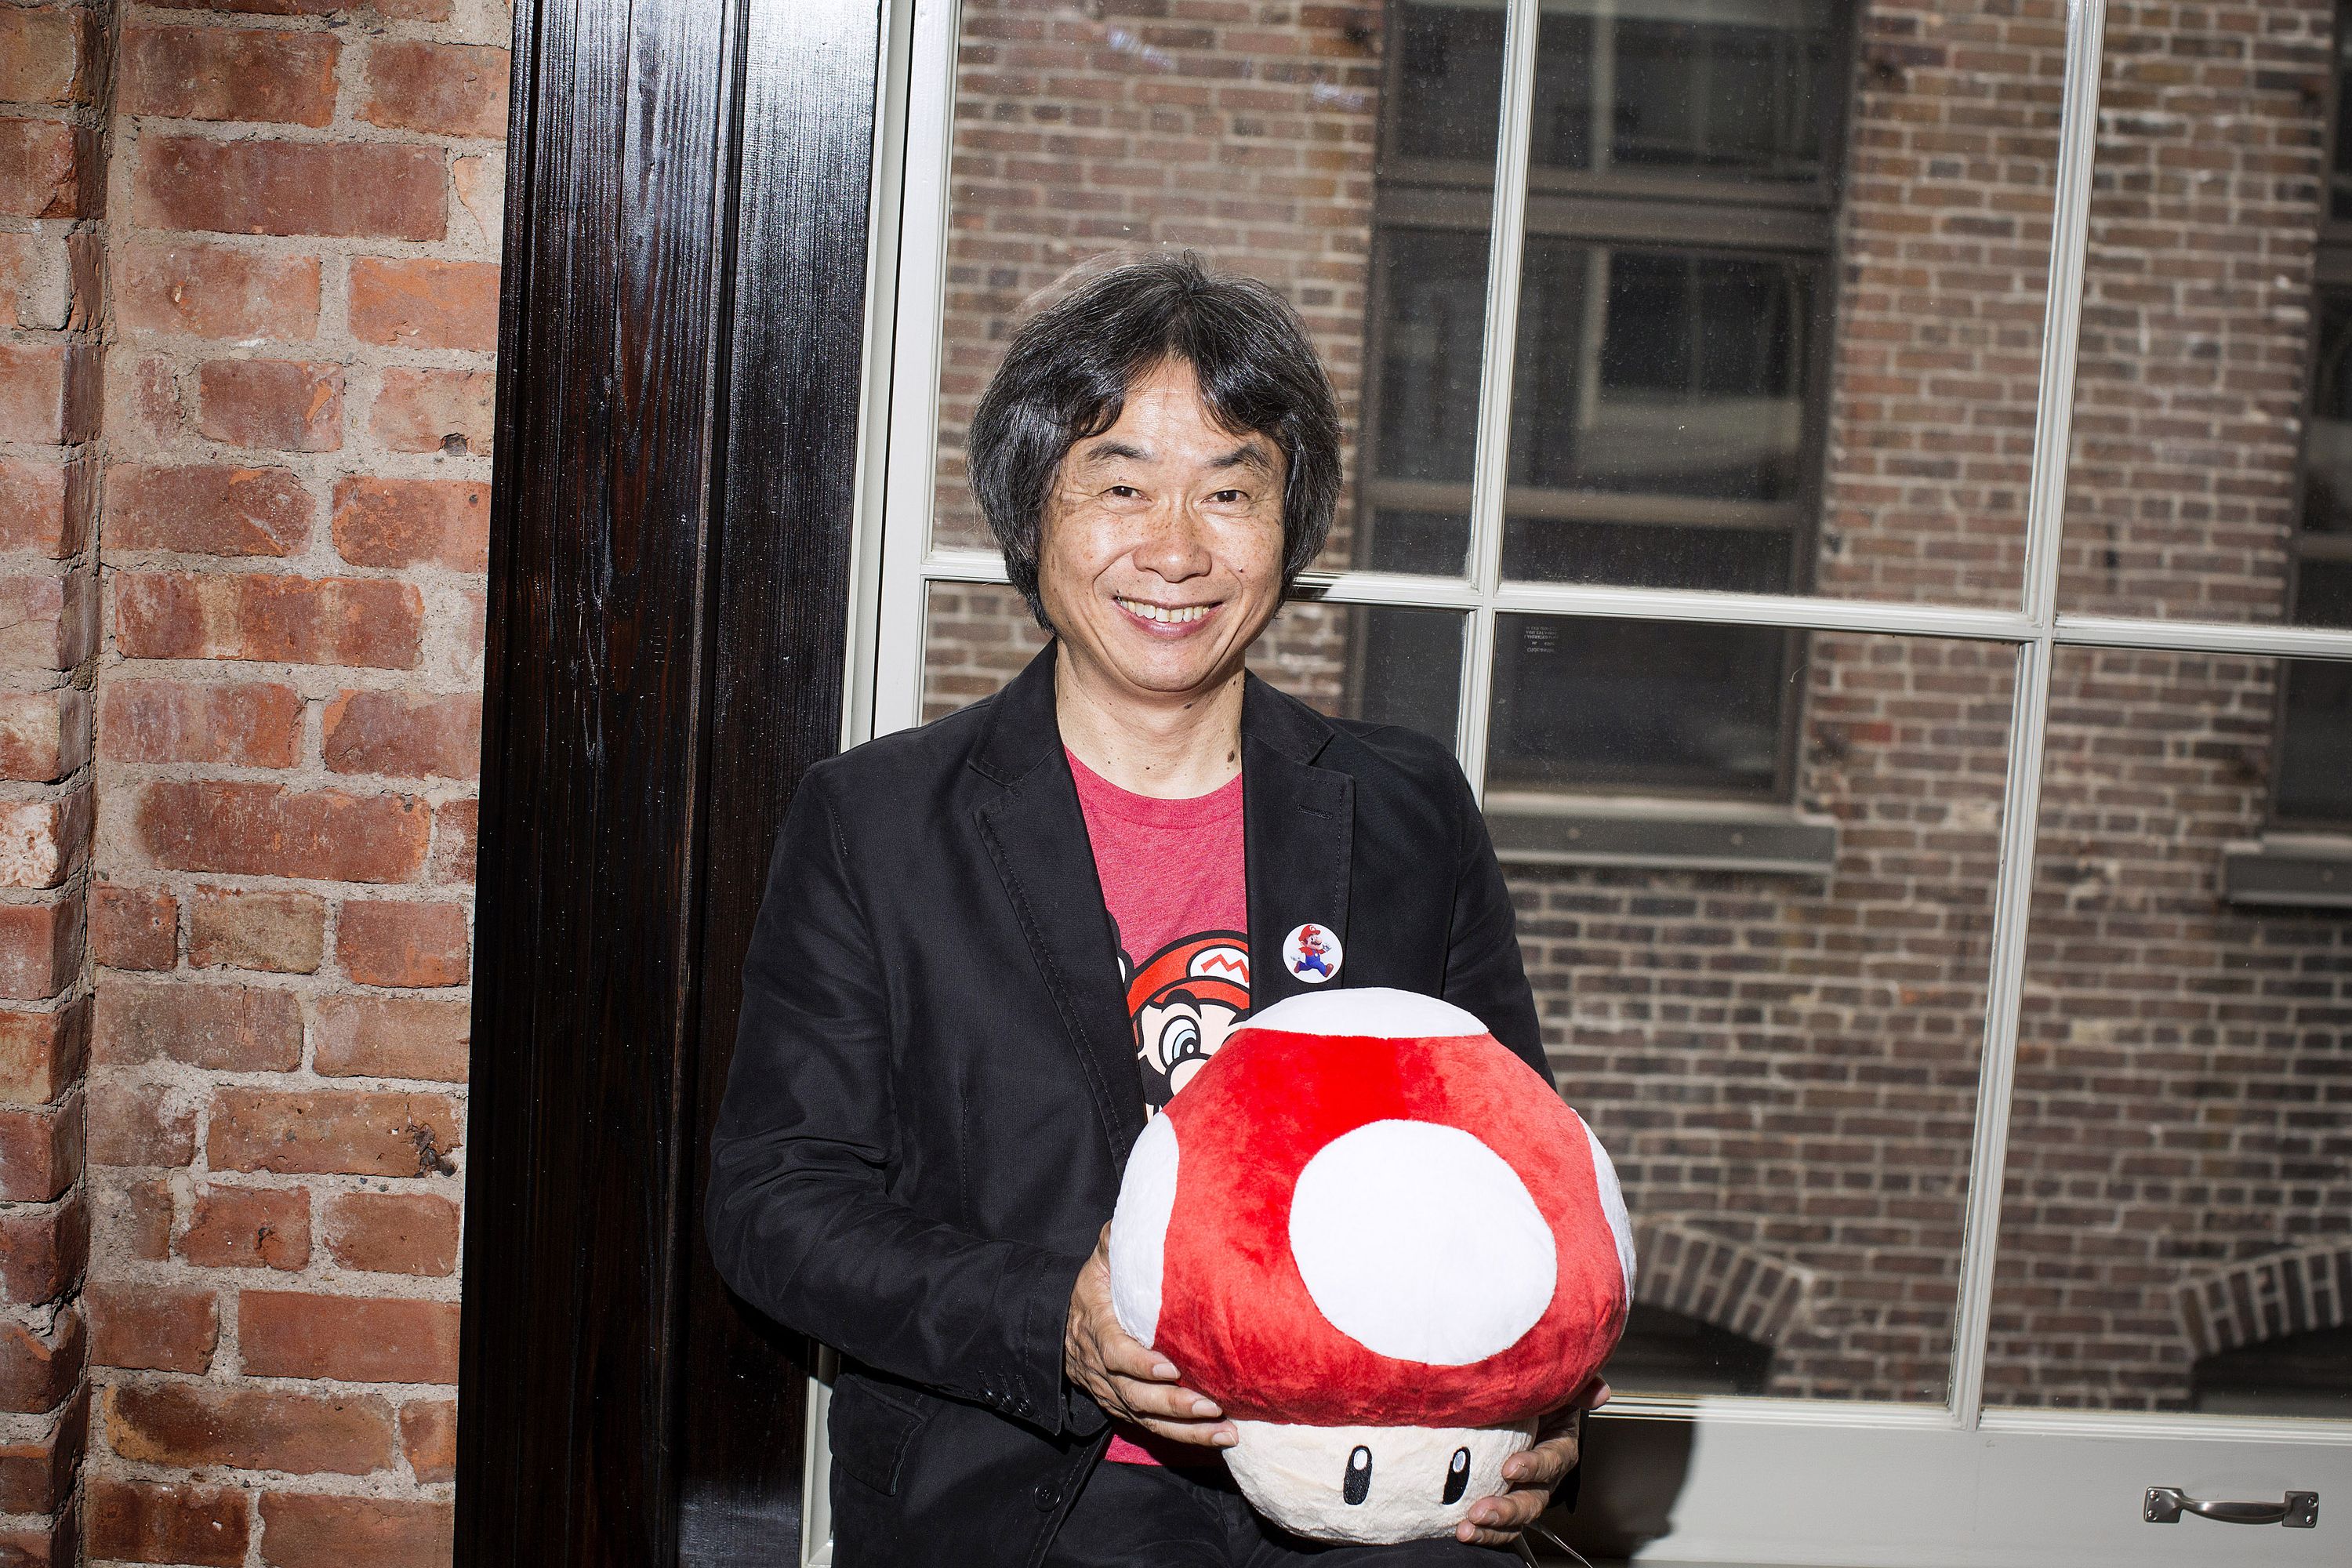 We talk to Mario creator Shigeru Miyamoto about the iconic